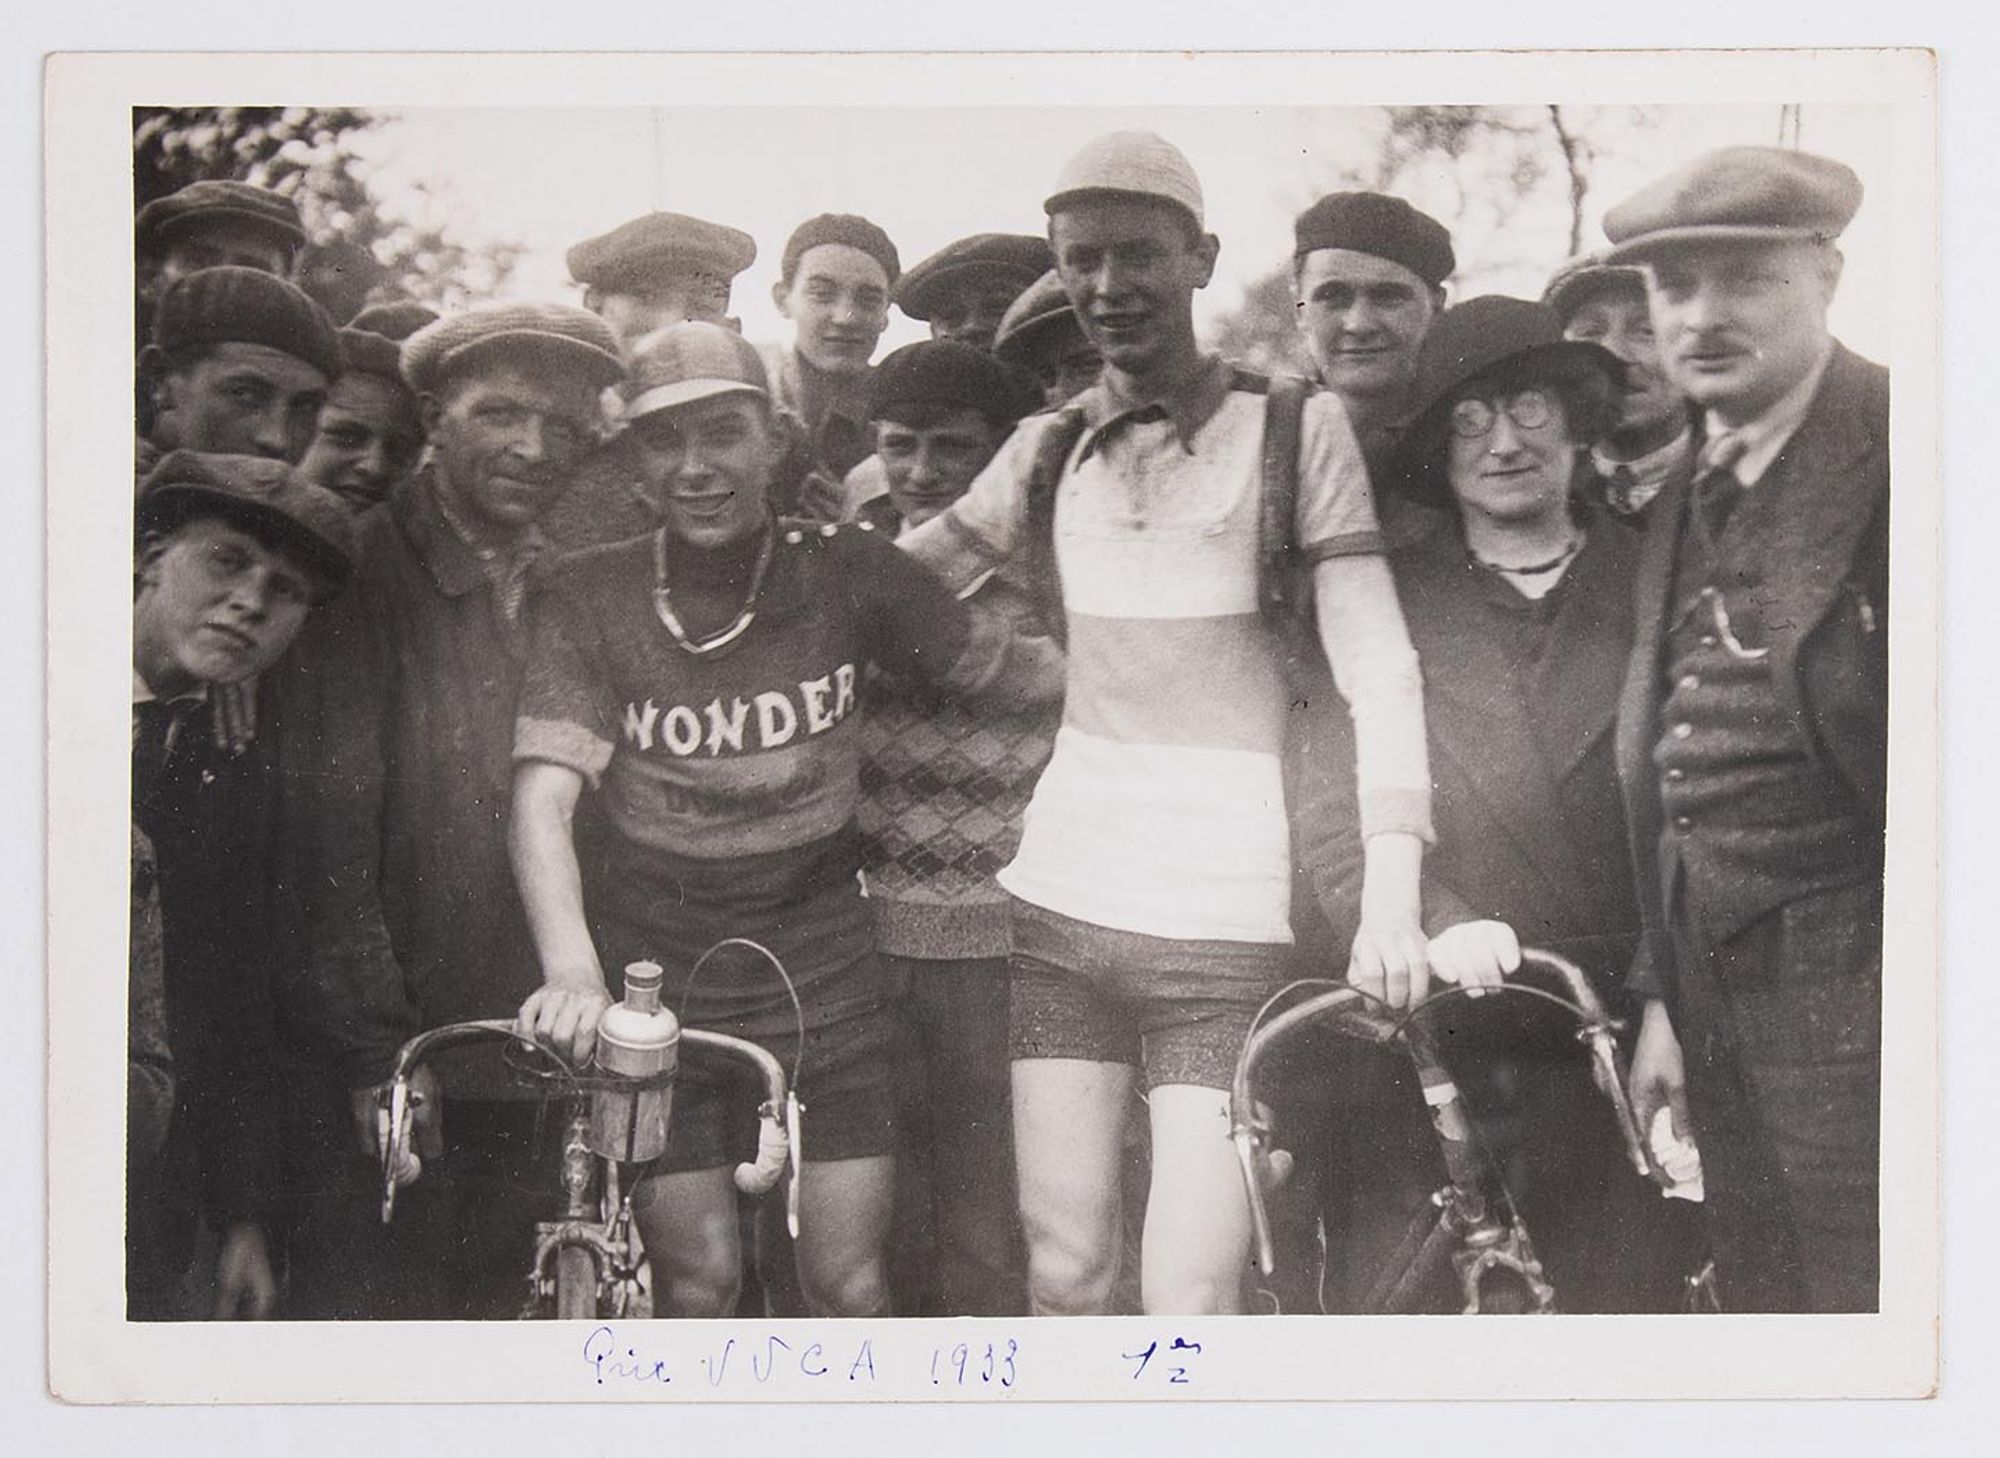 7 mai 1933. Prix de l'Union Vélo Club de l'Aube (U.V.C.A). Photographie de groupe. Hoffschir (maillot Wonder), premier, et Thivet, deuxième, posent au milieu des spectateurs, à Troyes. Lieu non identifié.